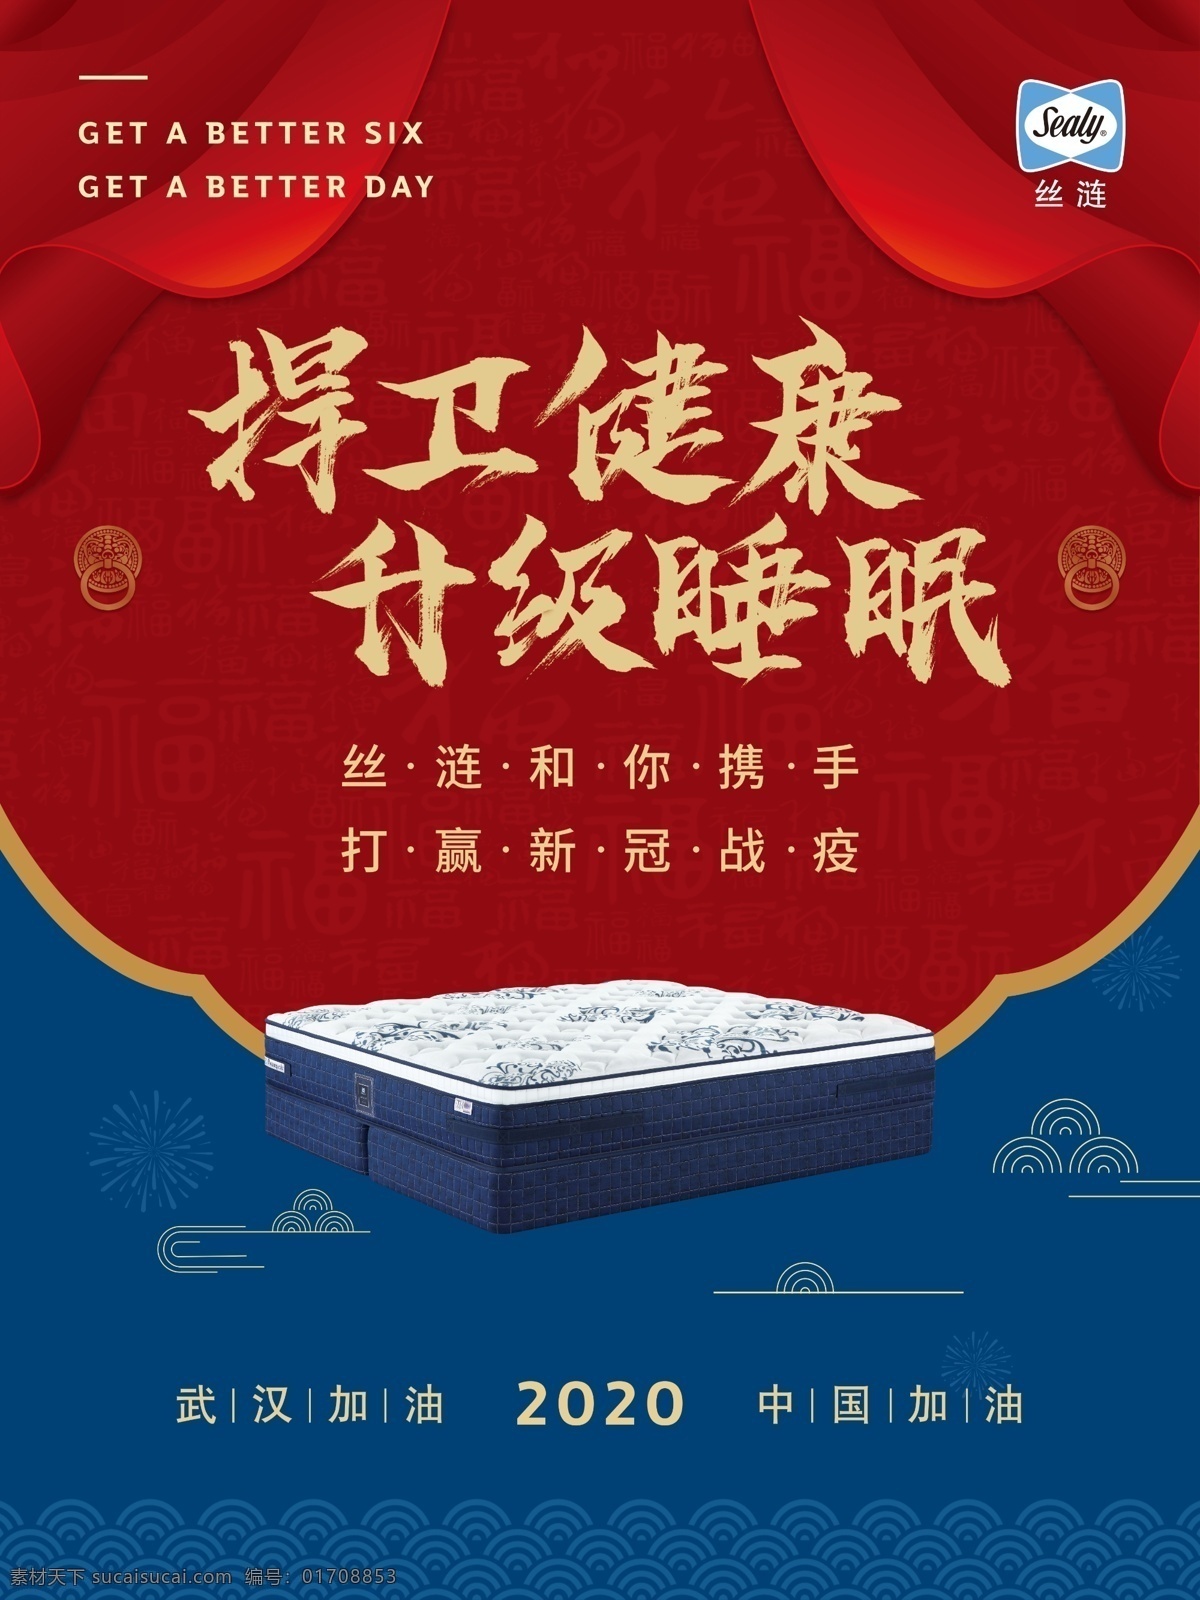 丝涟 捍卫健康 升级睡眠 标志 床垫 中国红